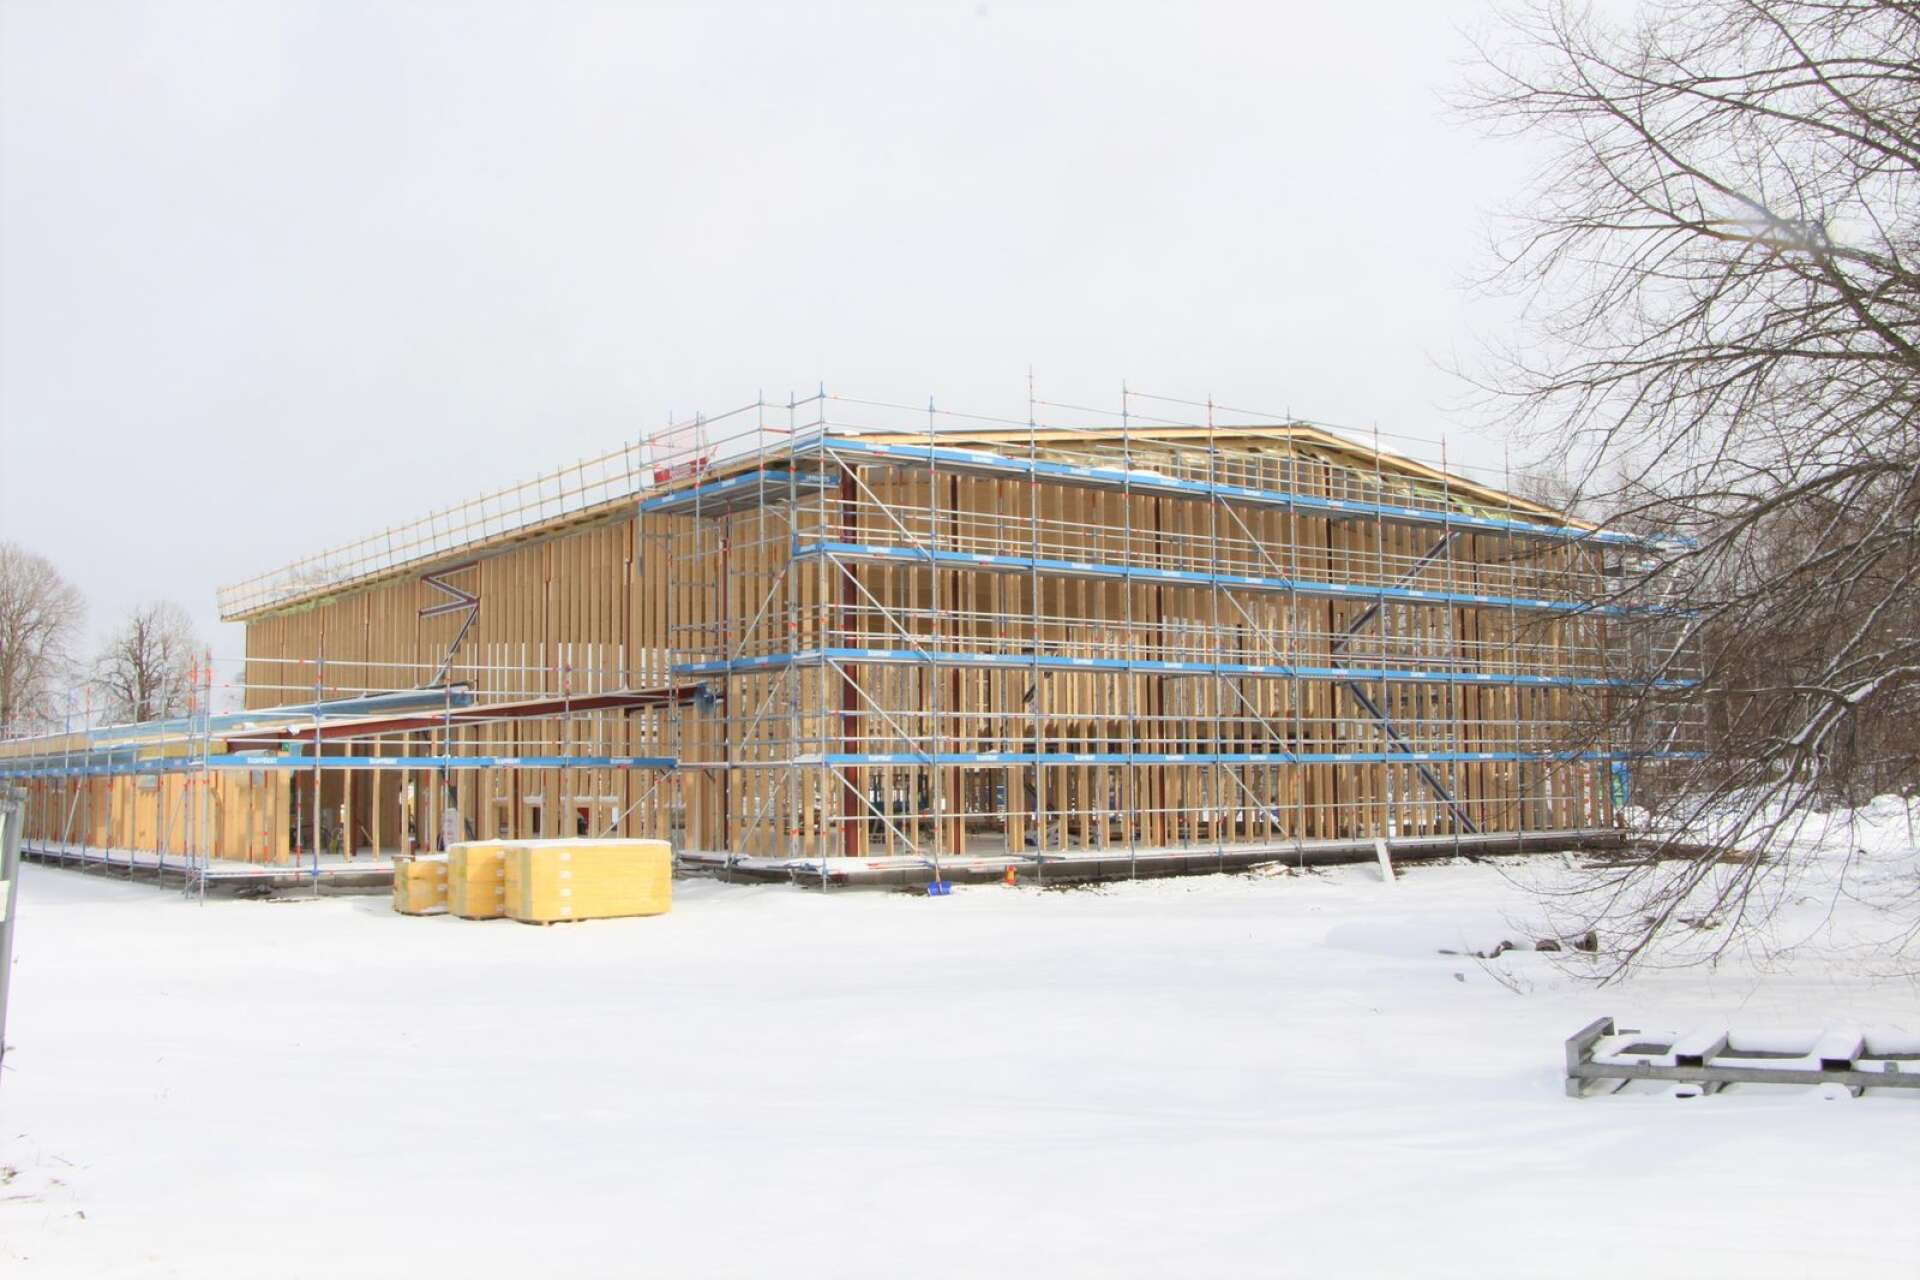 Bygget av den nya sporthallen i Skåre har fått avbrytas på grund av entreprenören Byggtemas konkurs. Nu måste kommunen hitta någon som kan ta över projektet som försenas.